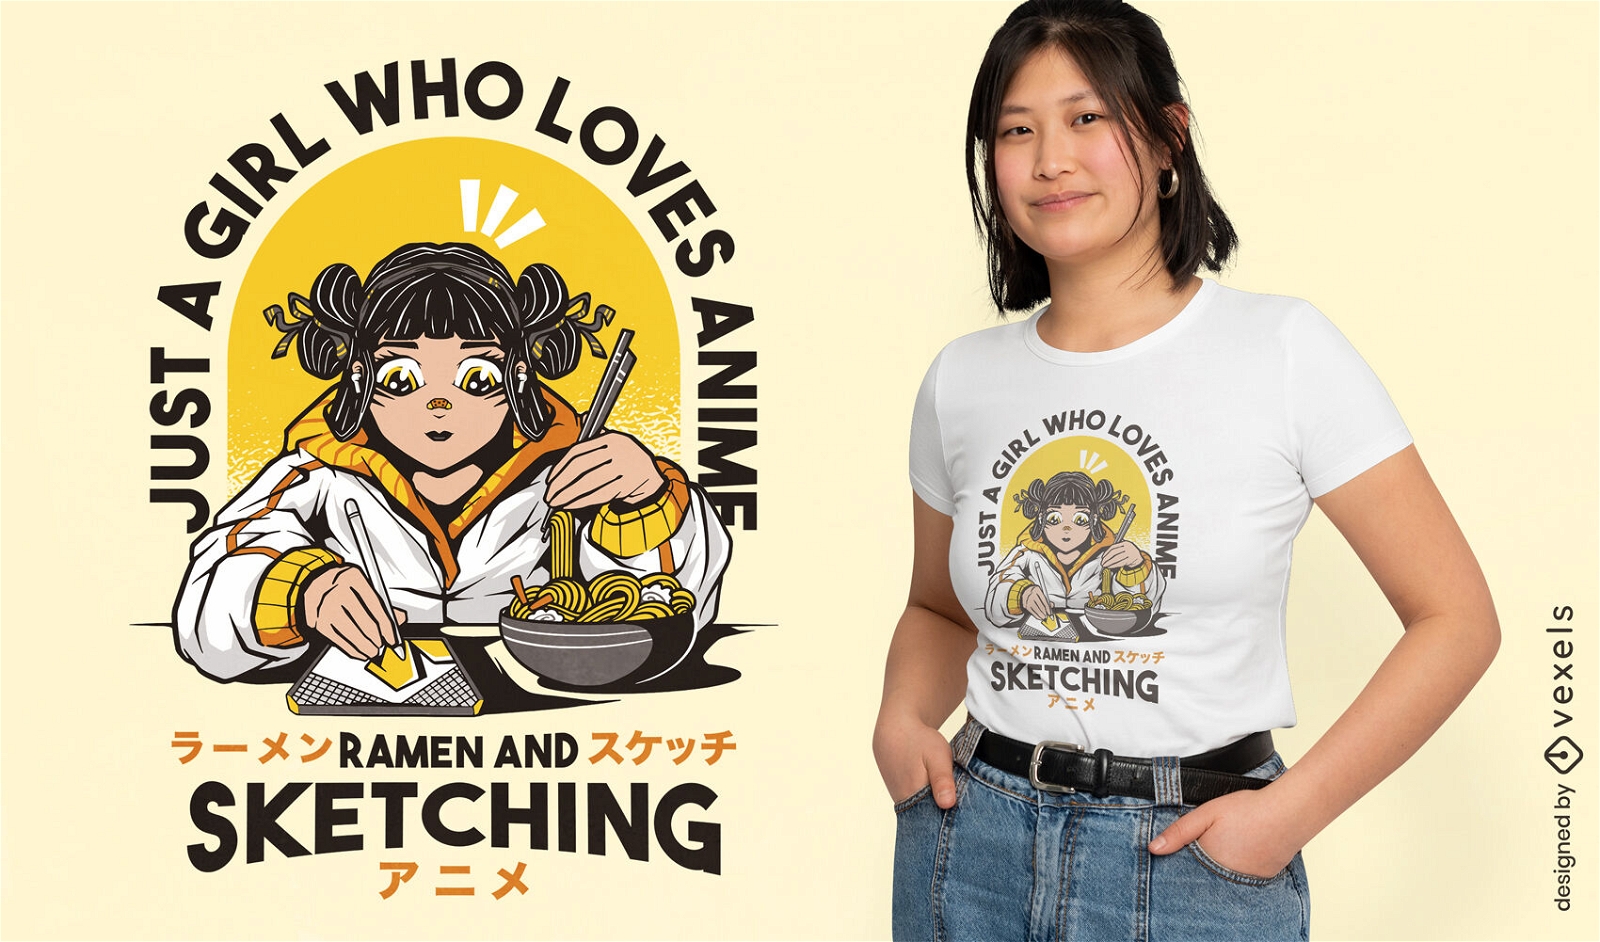 K?nstler-Anime- und Ramen-Liebhaber-T-Shirt-Design